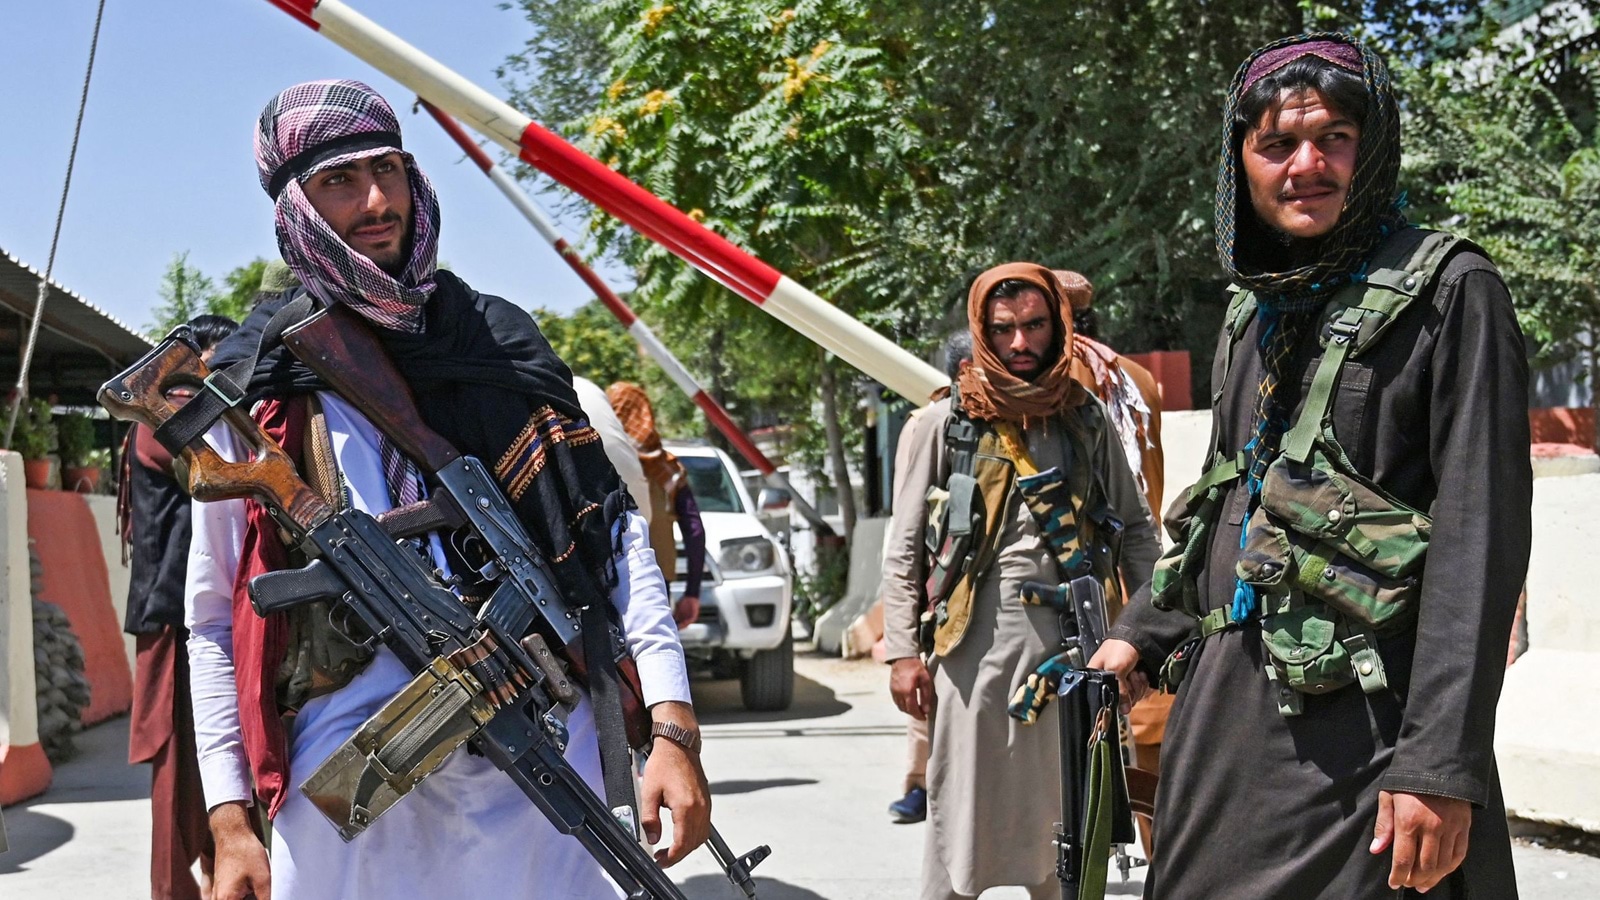 Taliban take over some U.N. premises, curb movement -U.N. report